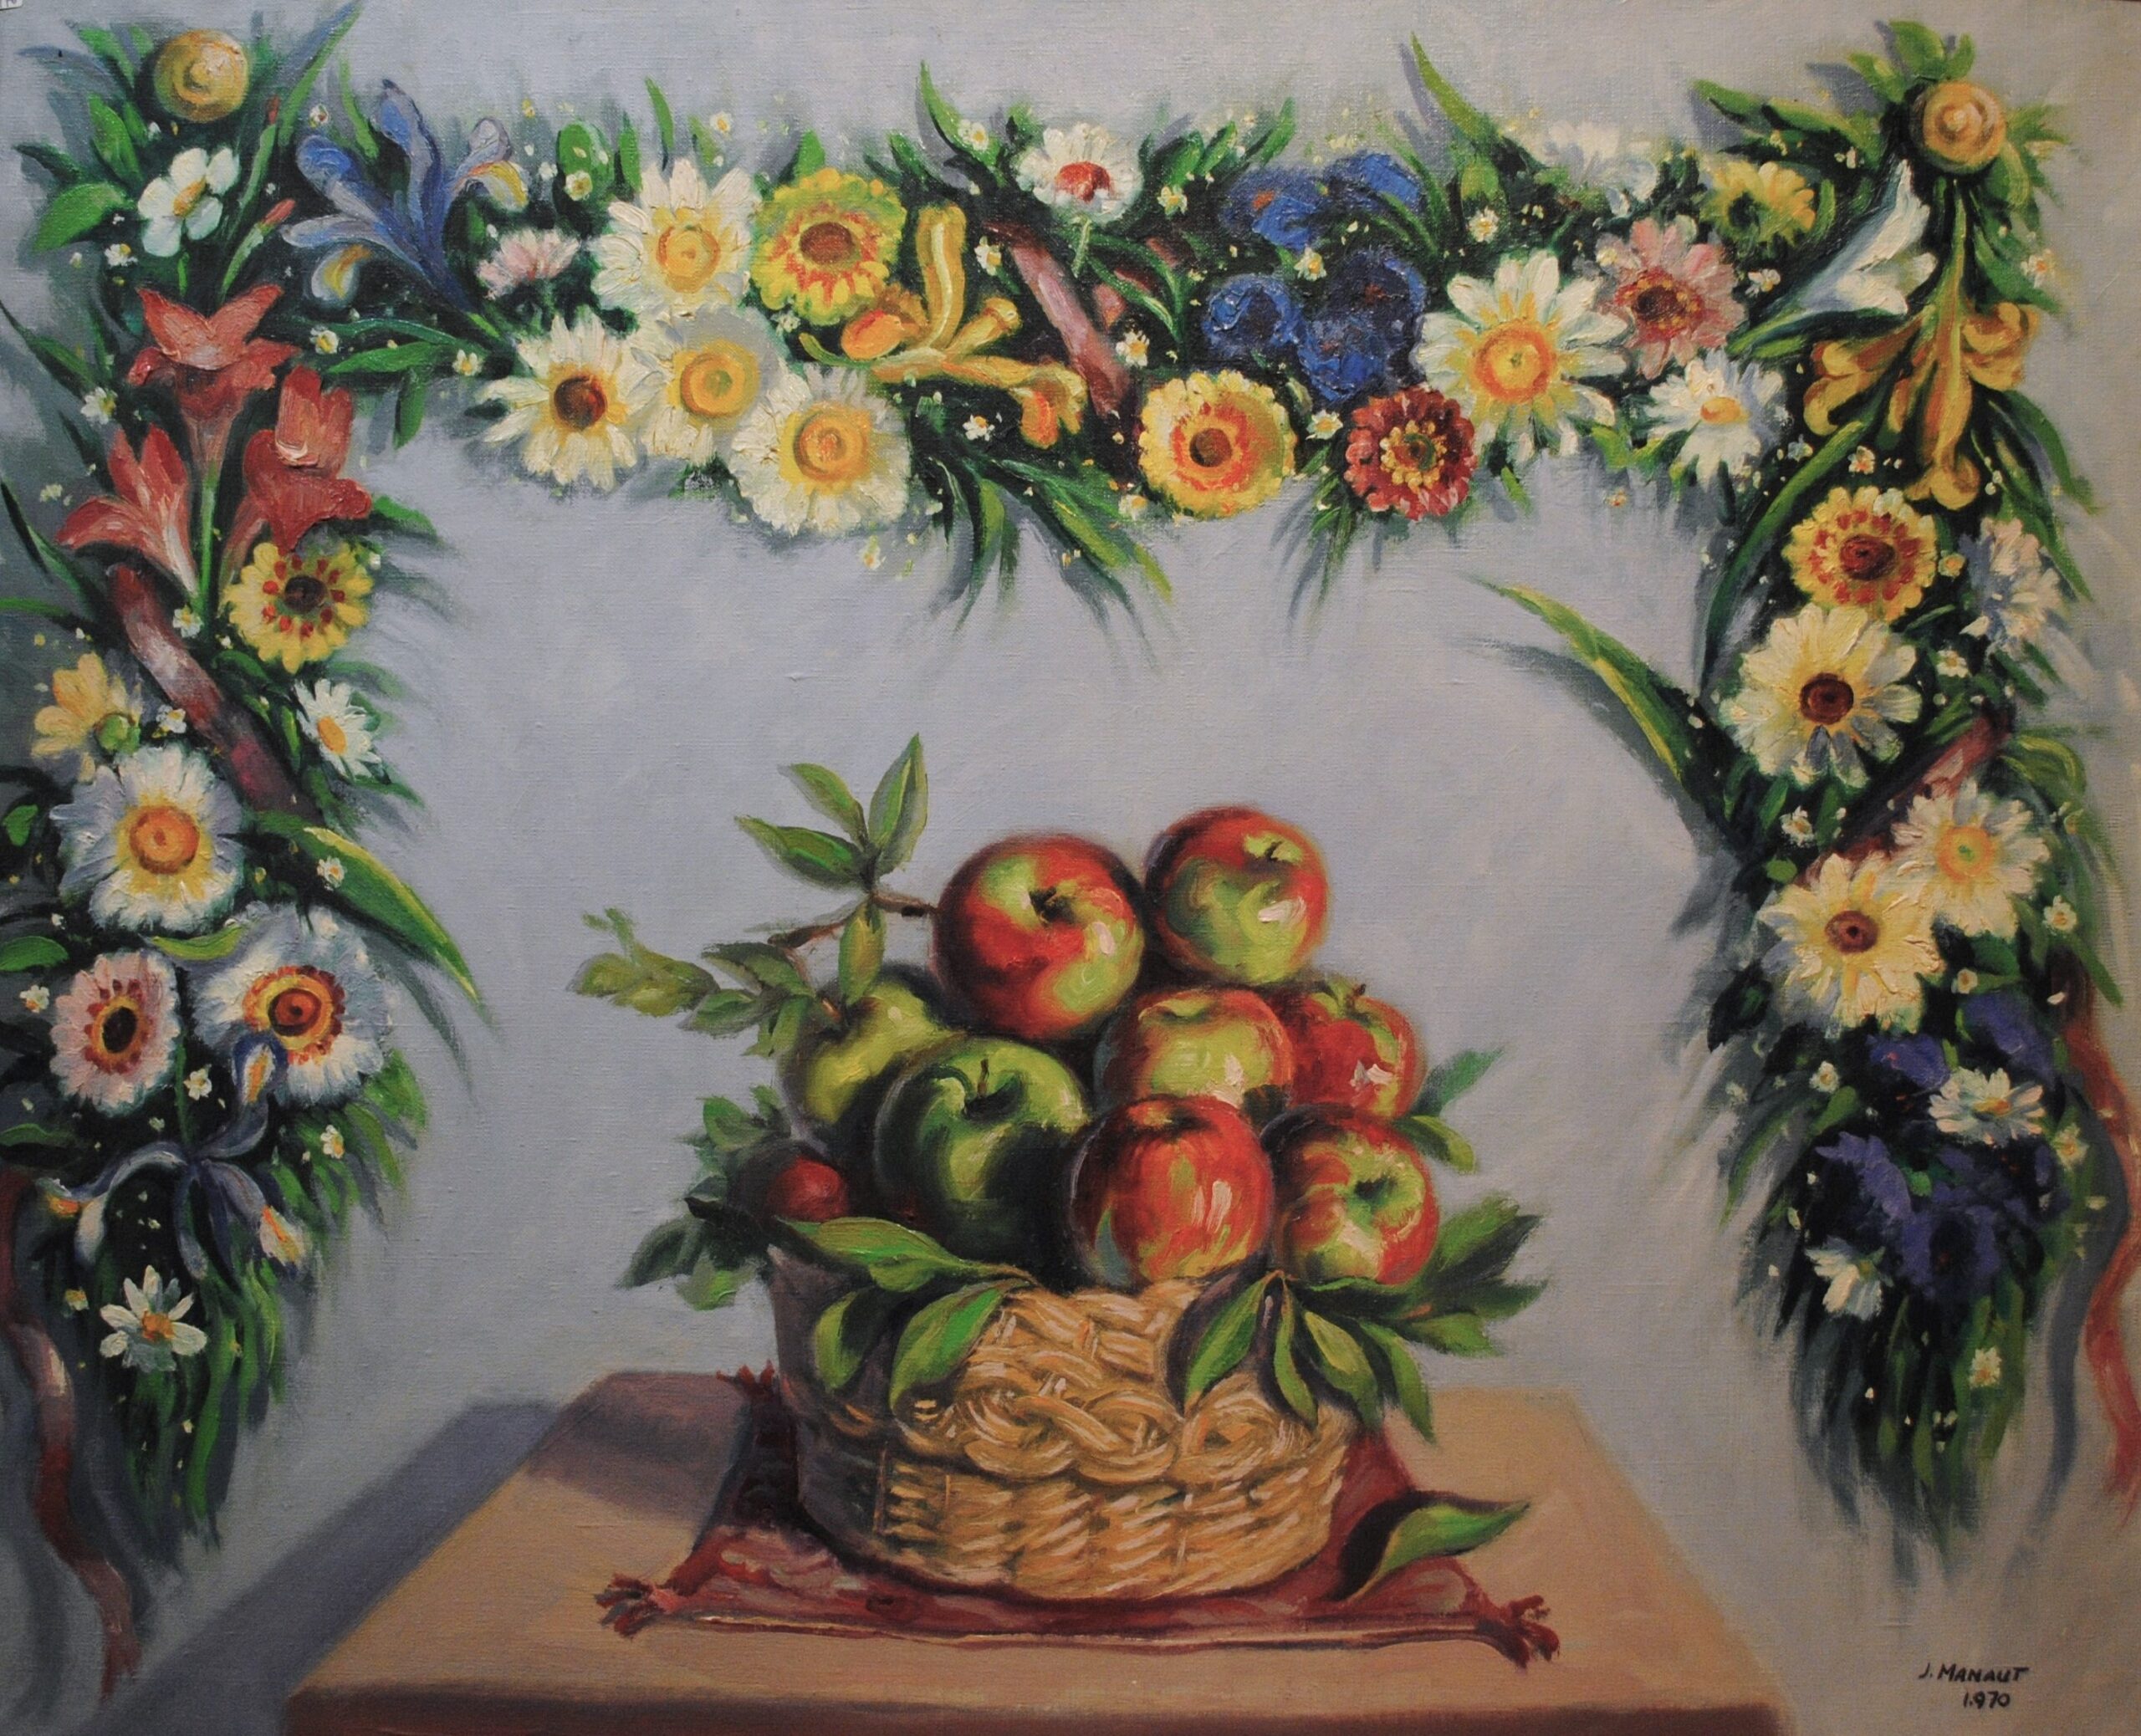 Pintura de José Manaut titulada Bodegón con manzanas y orla de flores, 1970. Óleo sobre lienzo.